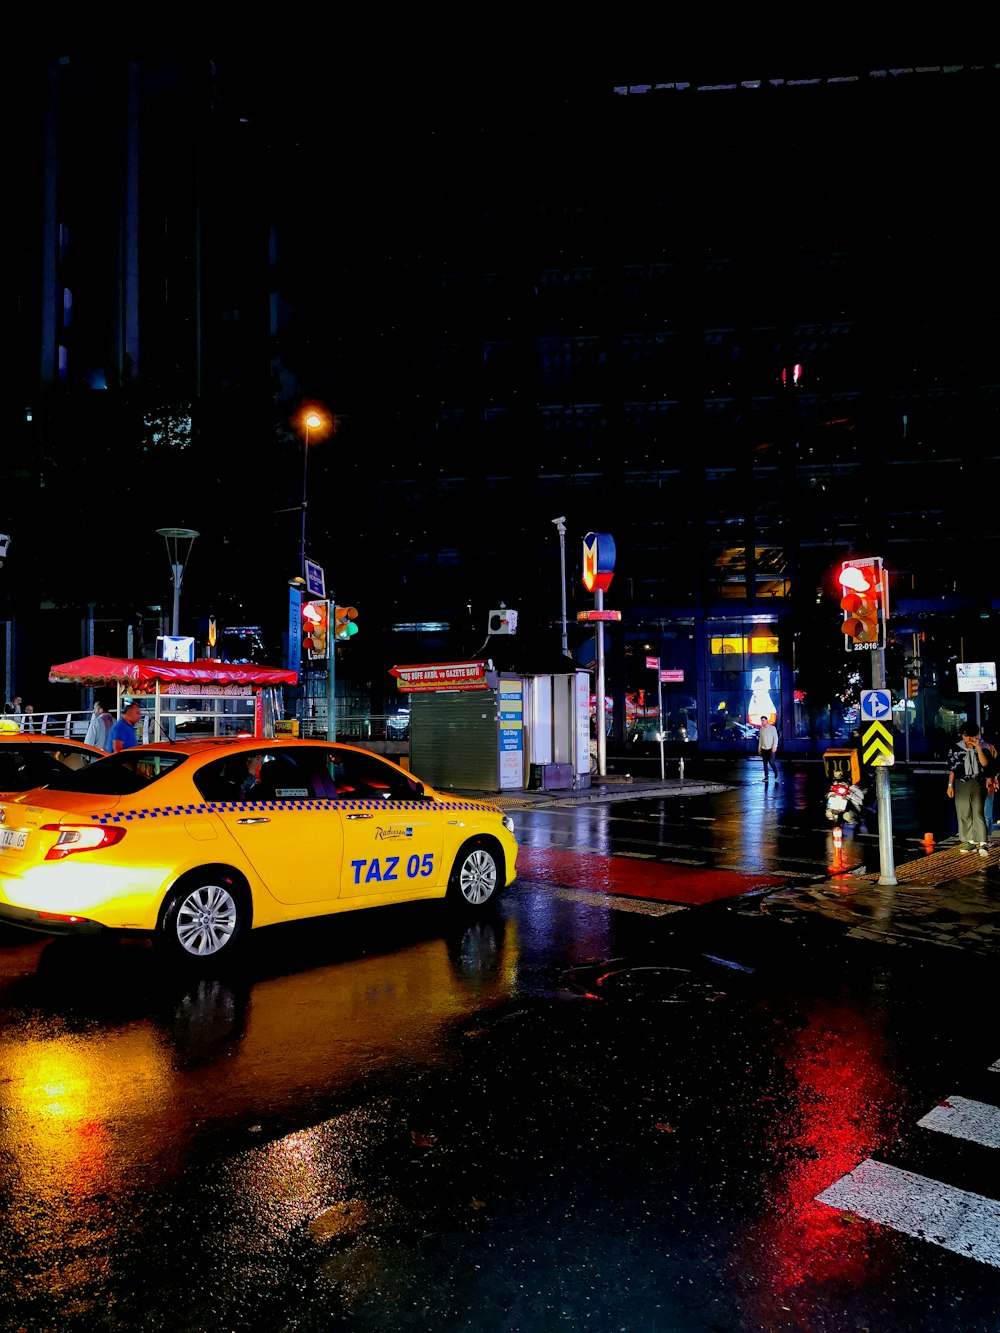 Táxi amarelo passando pela estrada molhada durante a noite